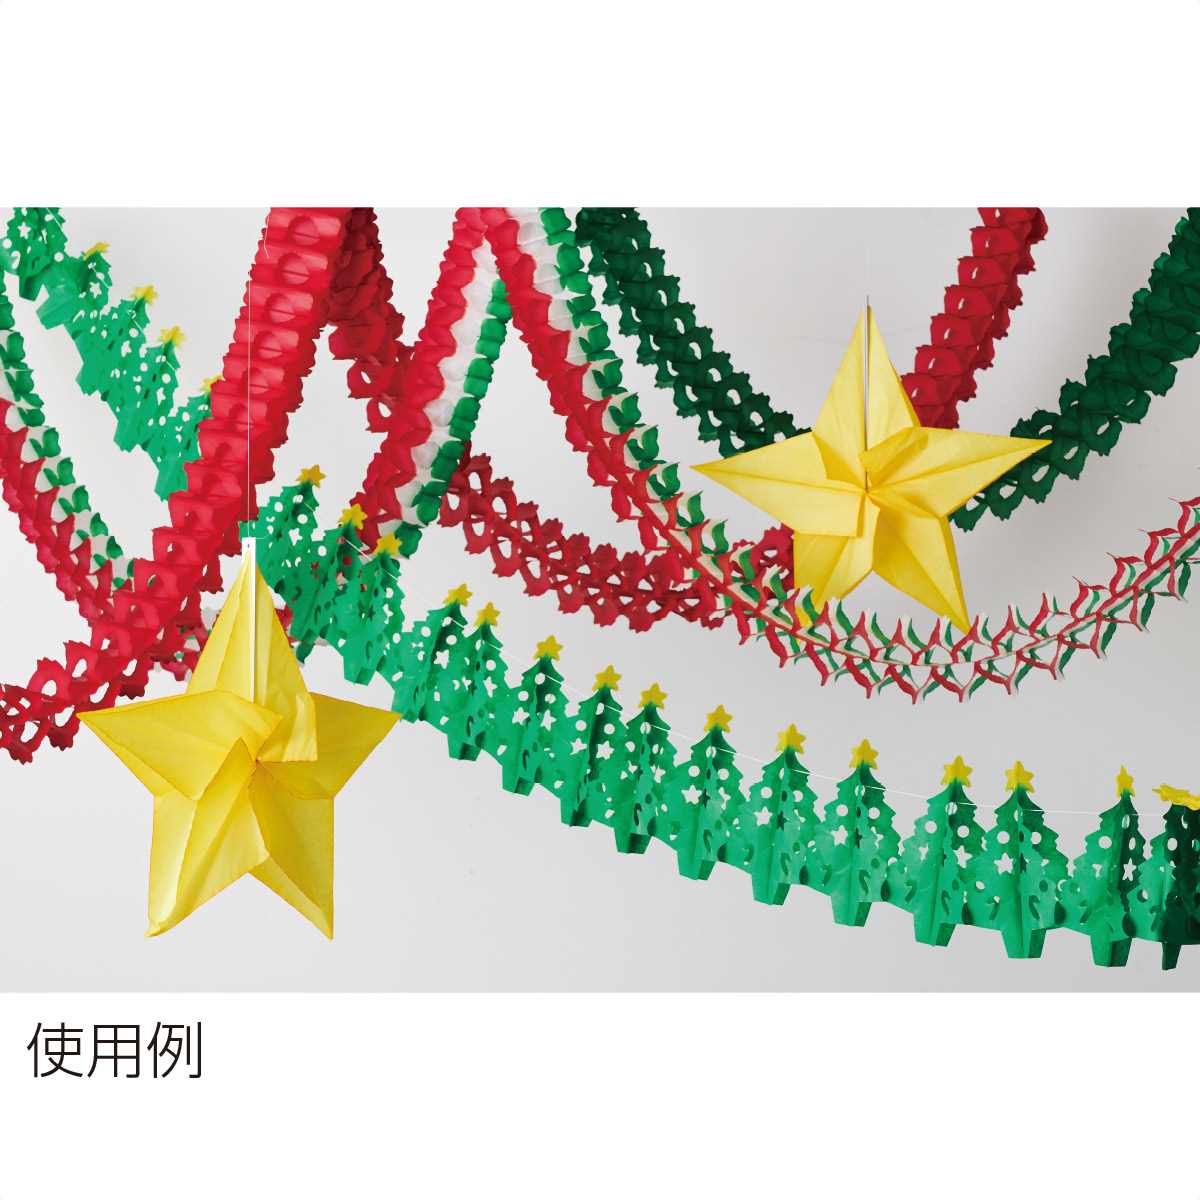 ペーパーハニカムモチーフ クリスマス ディスプレイ 店舗装飾 クリスマス飾り 吊るし飾り 天井 通販 ストア エキスプレス